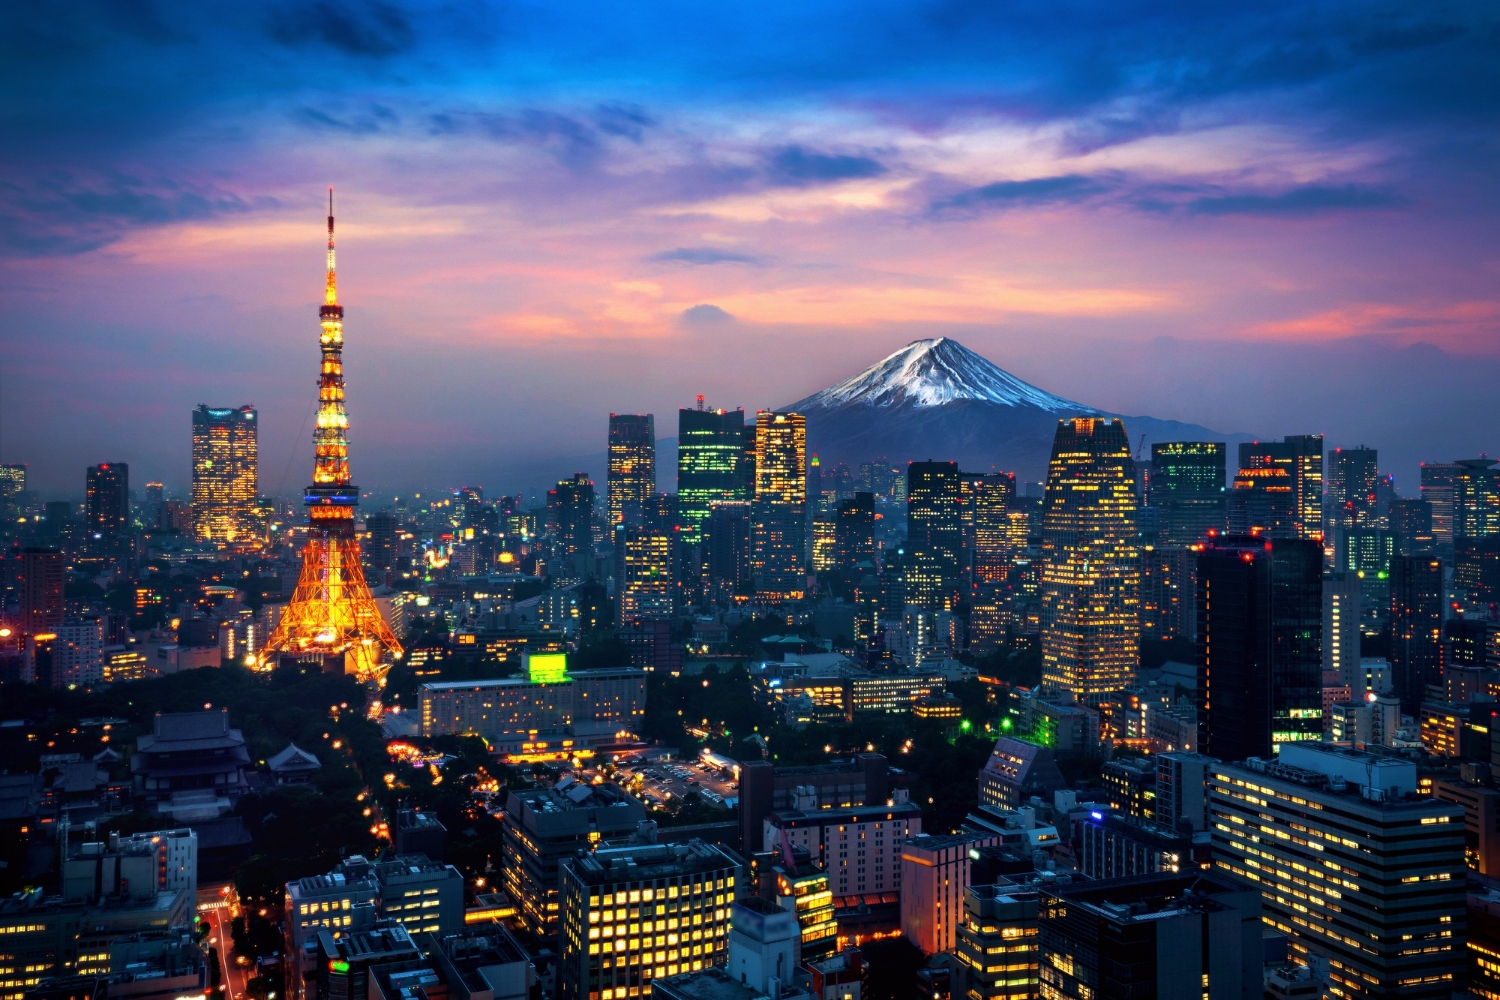 cidade de tokyo no japao, melhores cidades grandes do mundo